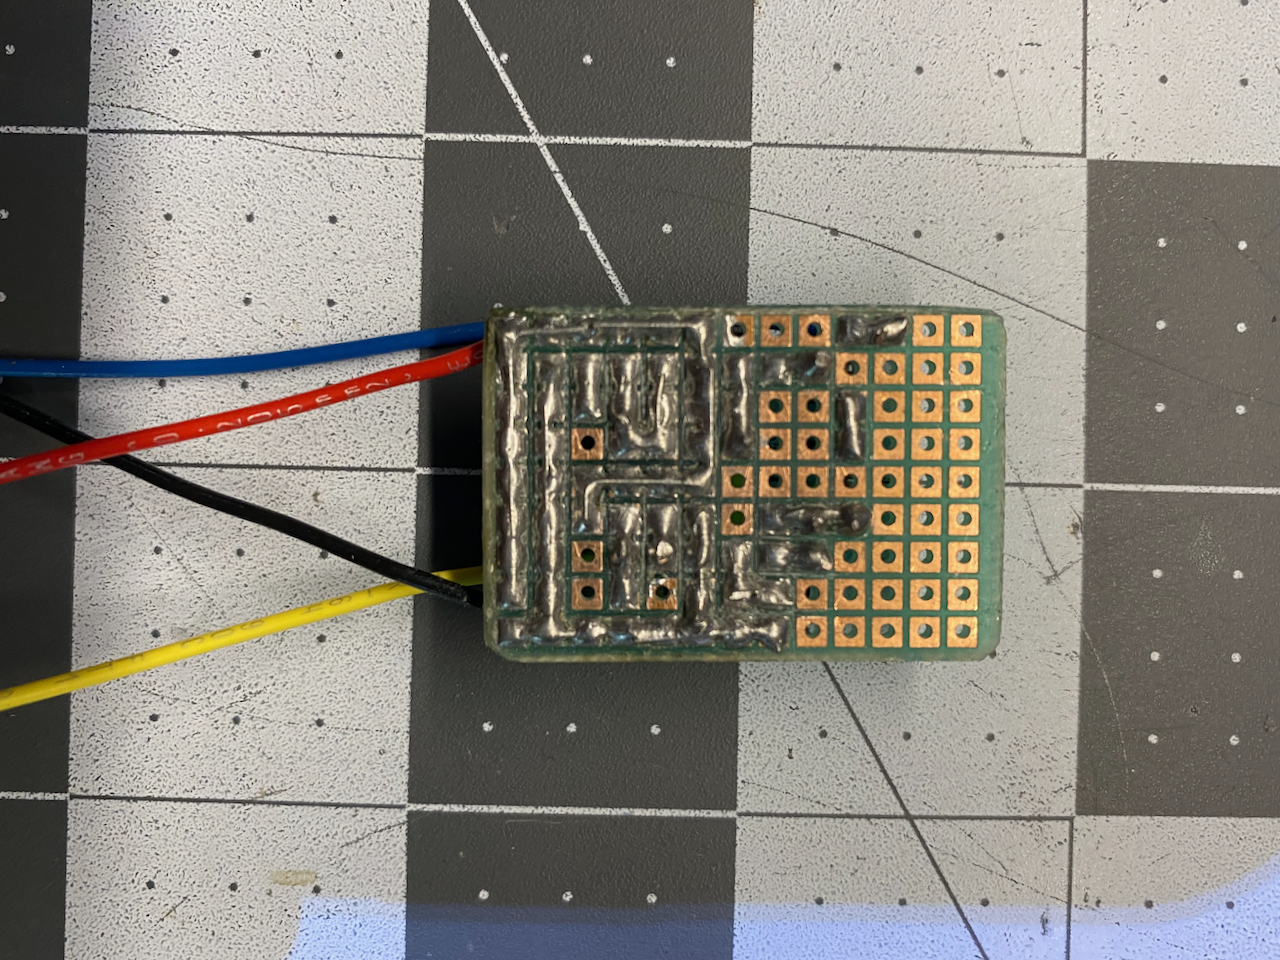 ZX81/TIMEX-SINCLAIR 1000 Composite Video Mod Part 2 - Plus Troubleshooting